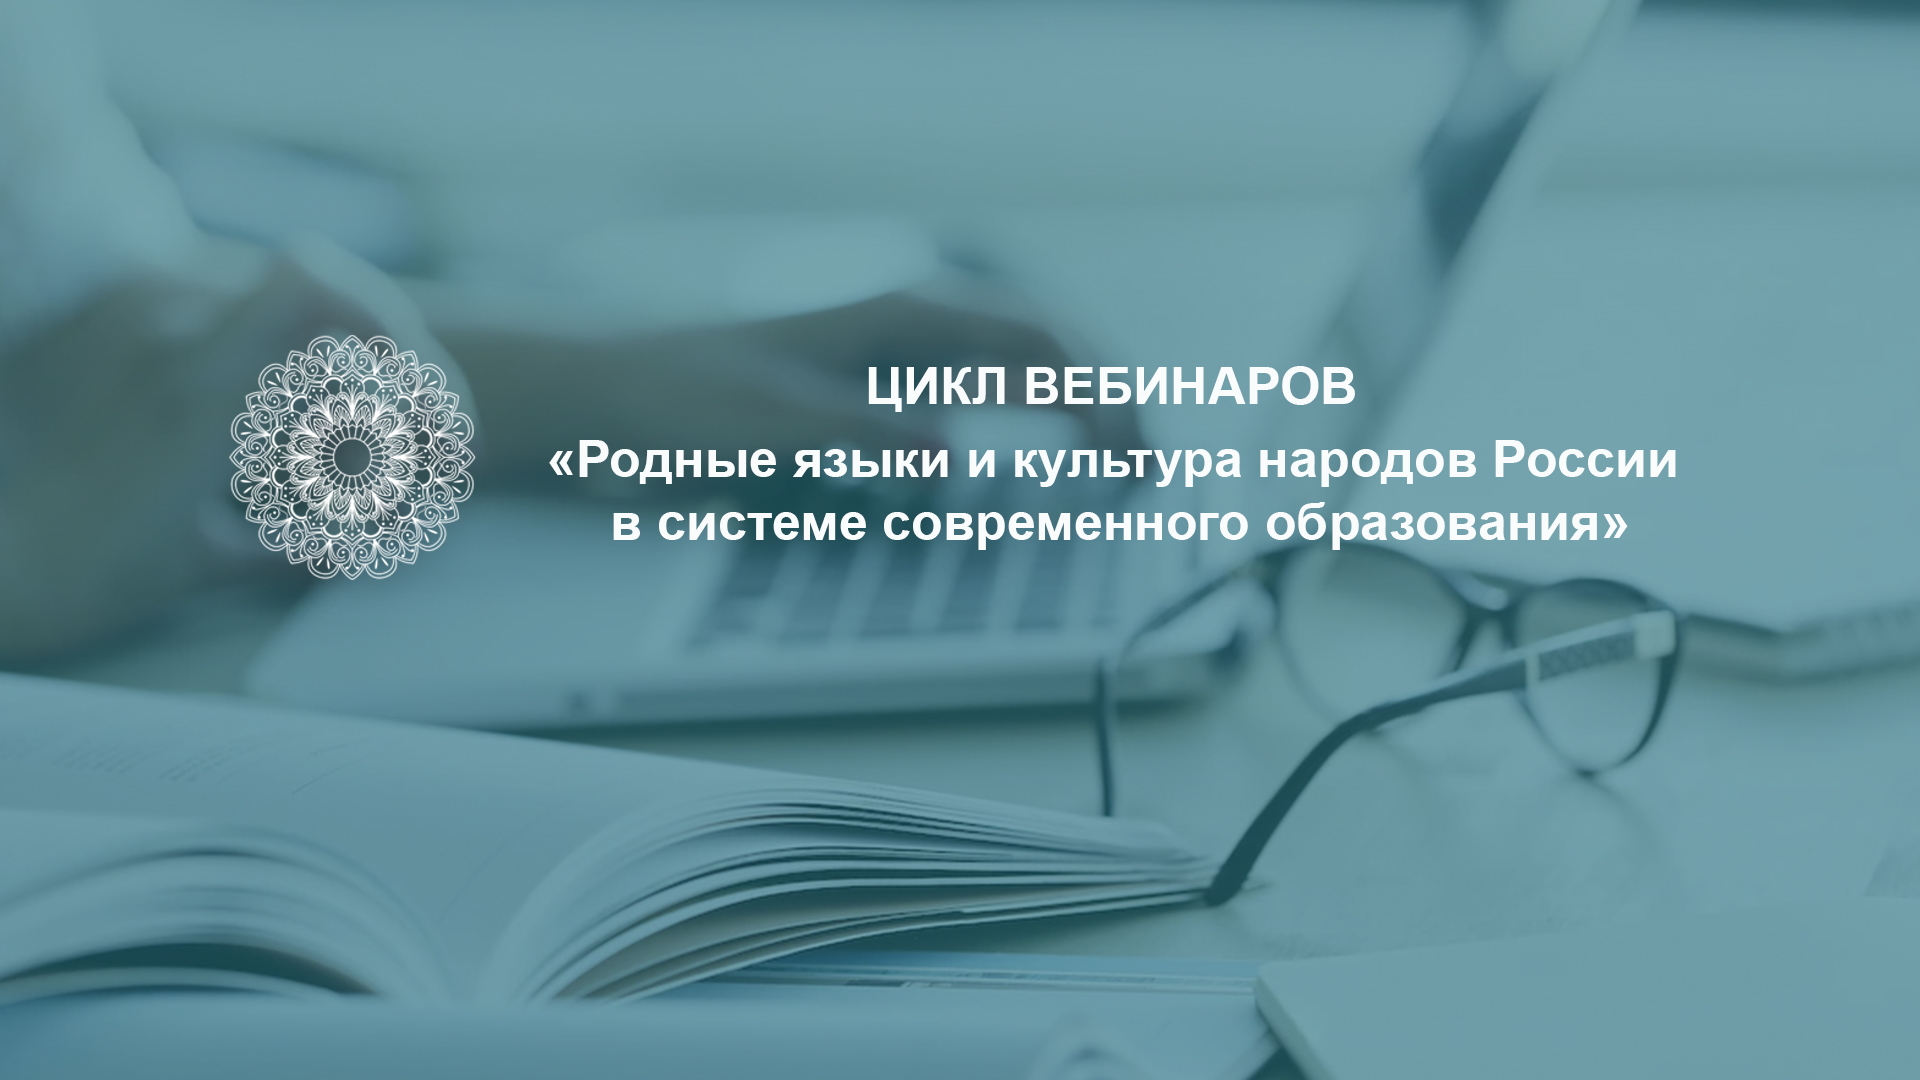 Более ста педагогов получат удостоверения о повышении квалификации по программе «Родные языки и культура народов России в системе современного образования» 